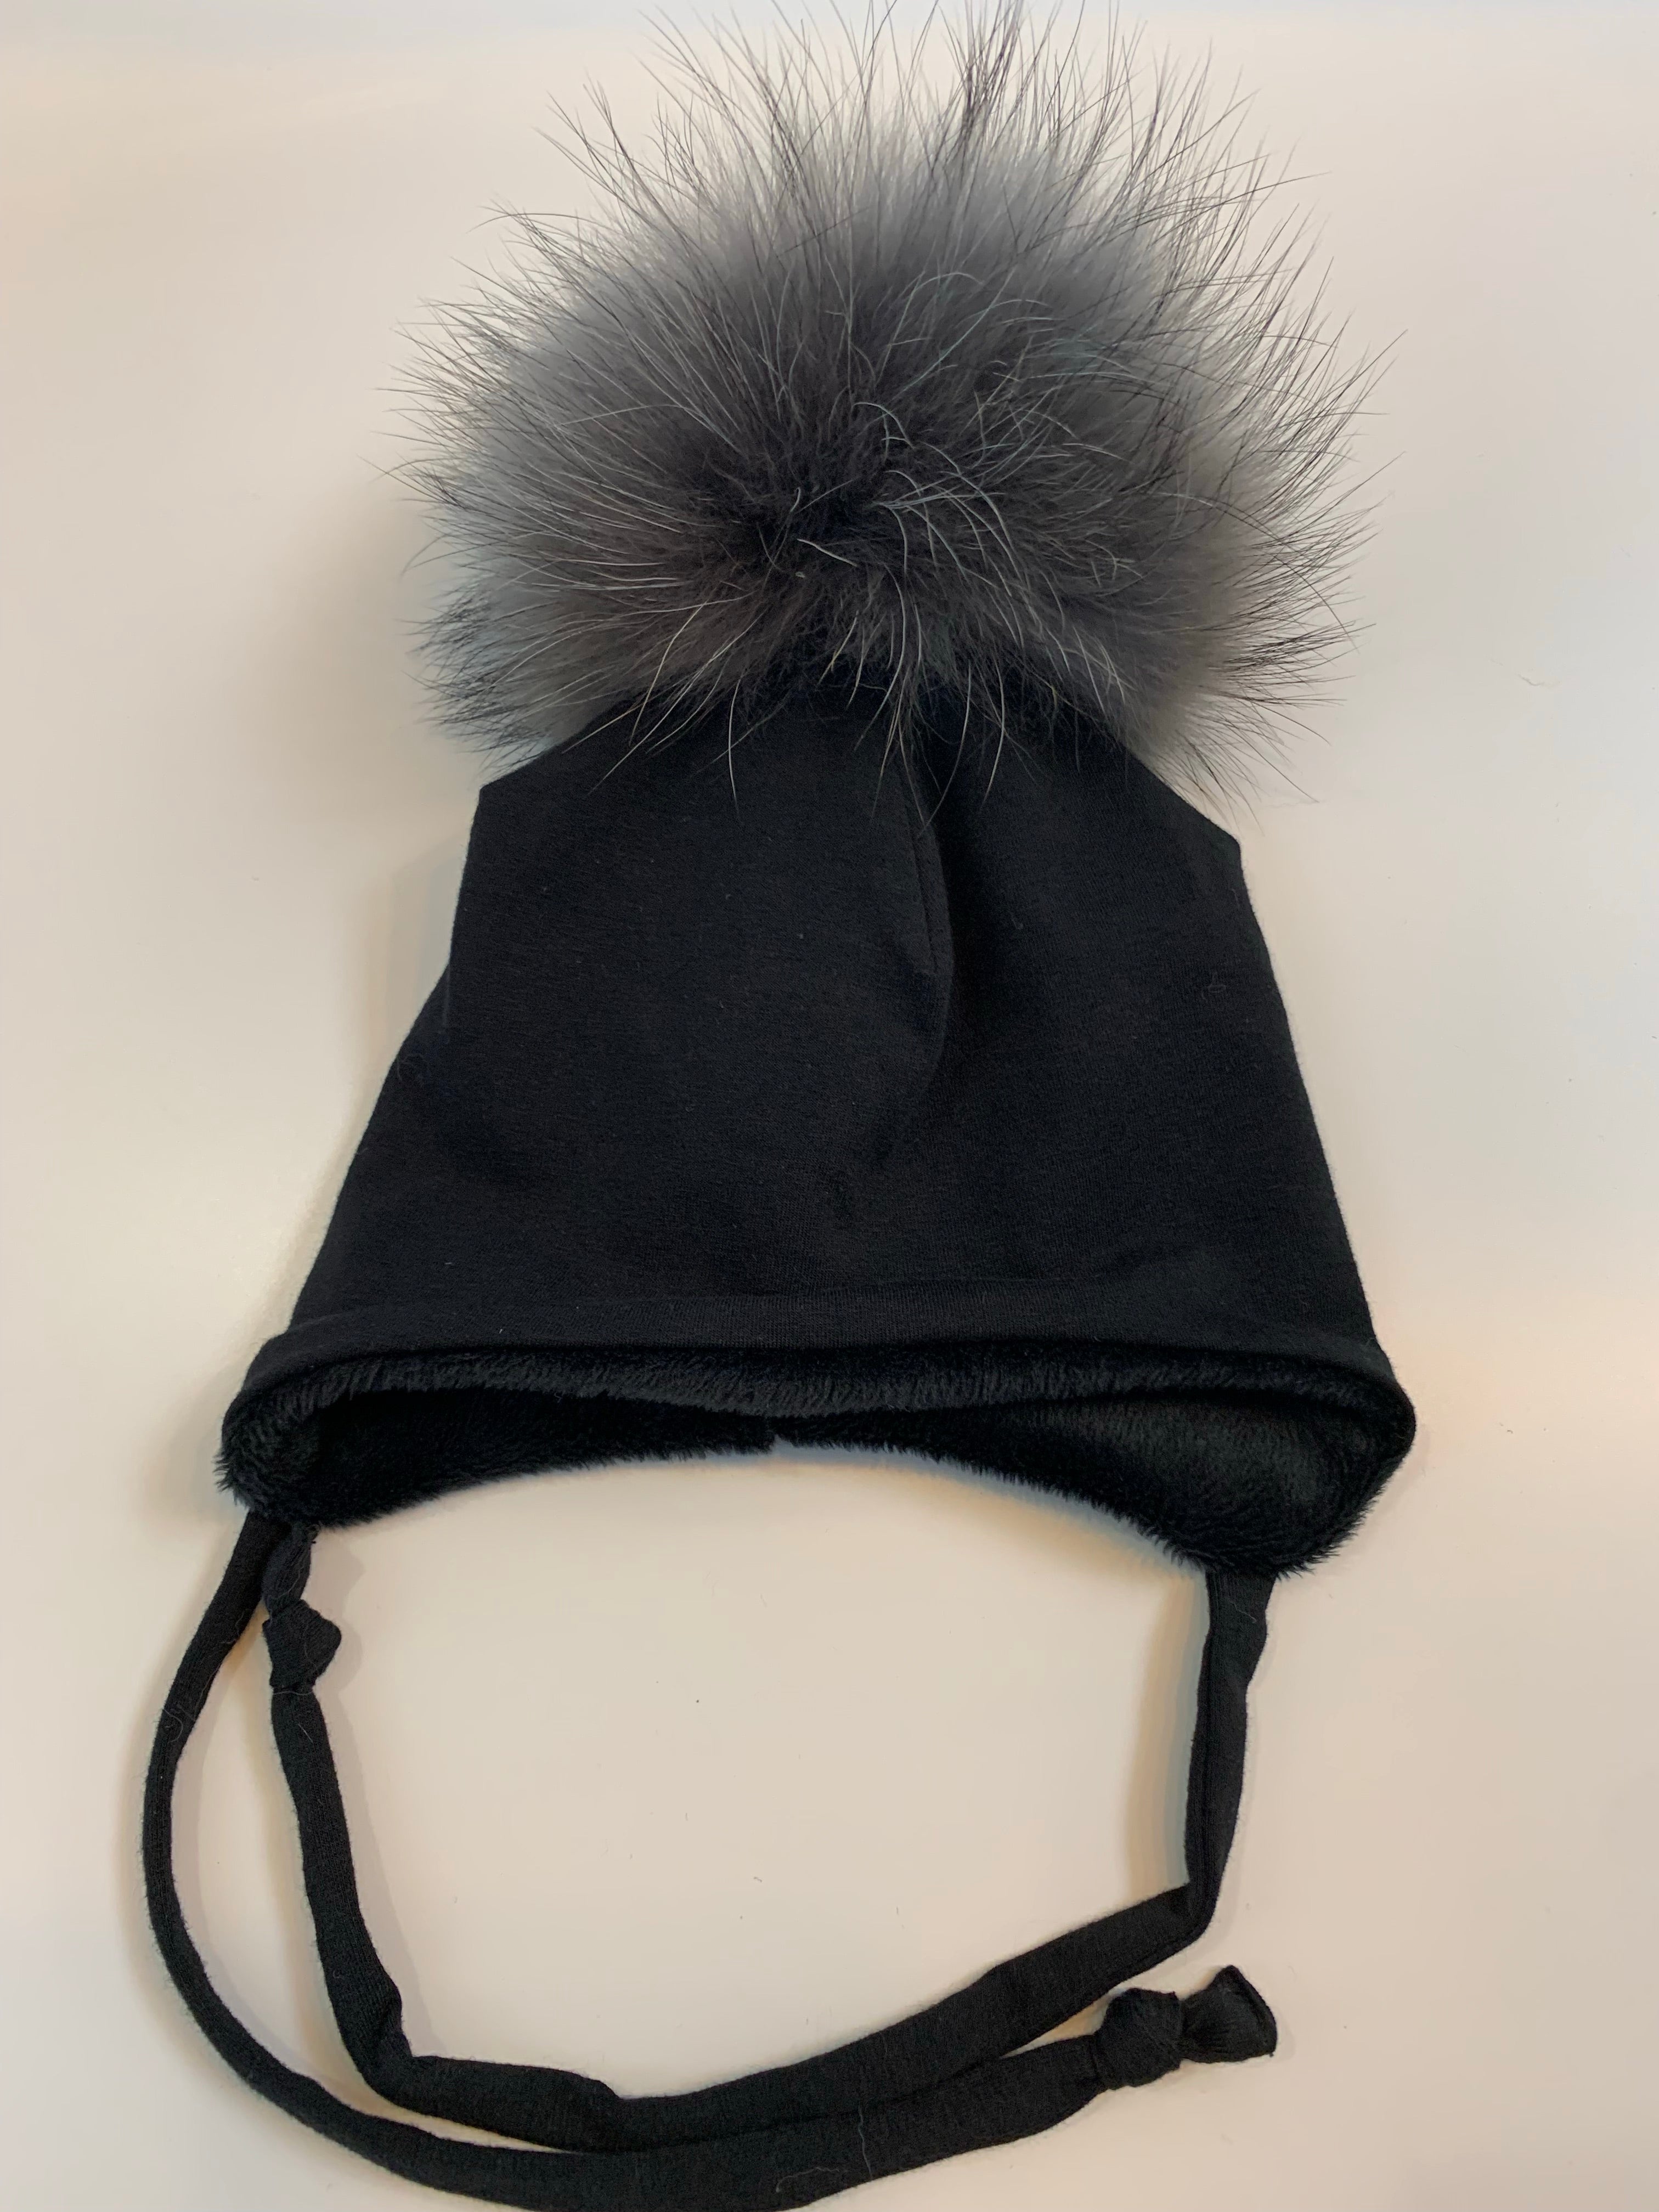 MEF création- Tuque doublée pour l’hiver avec attache- noir